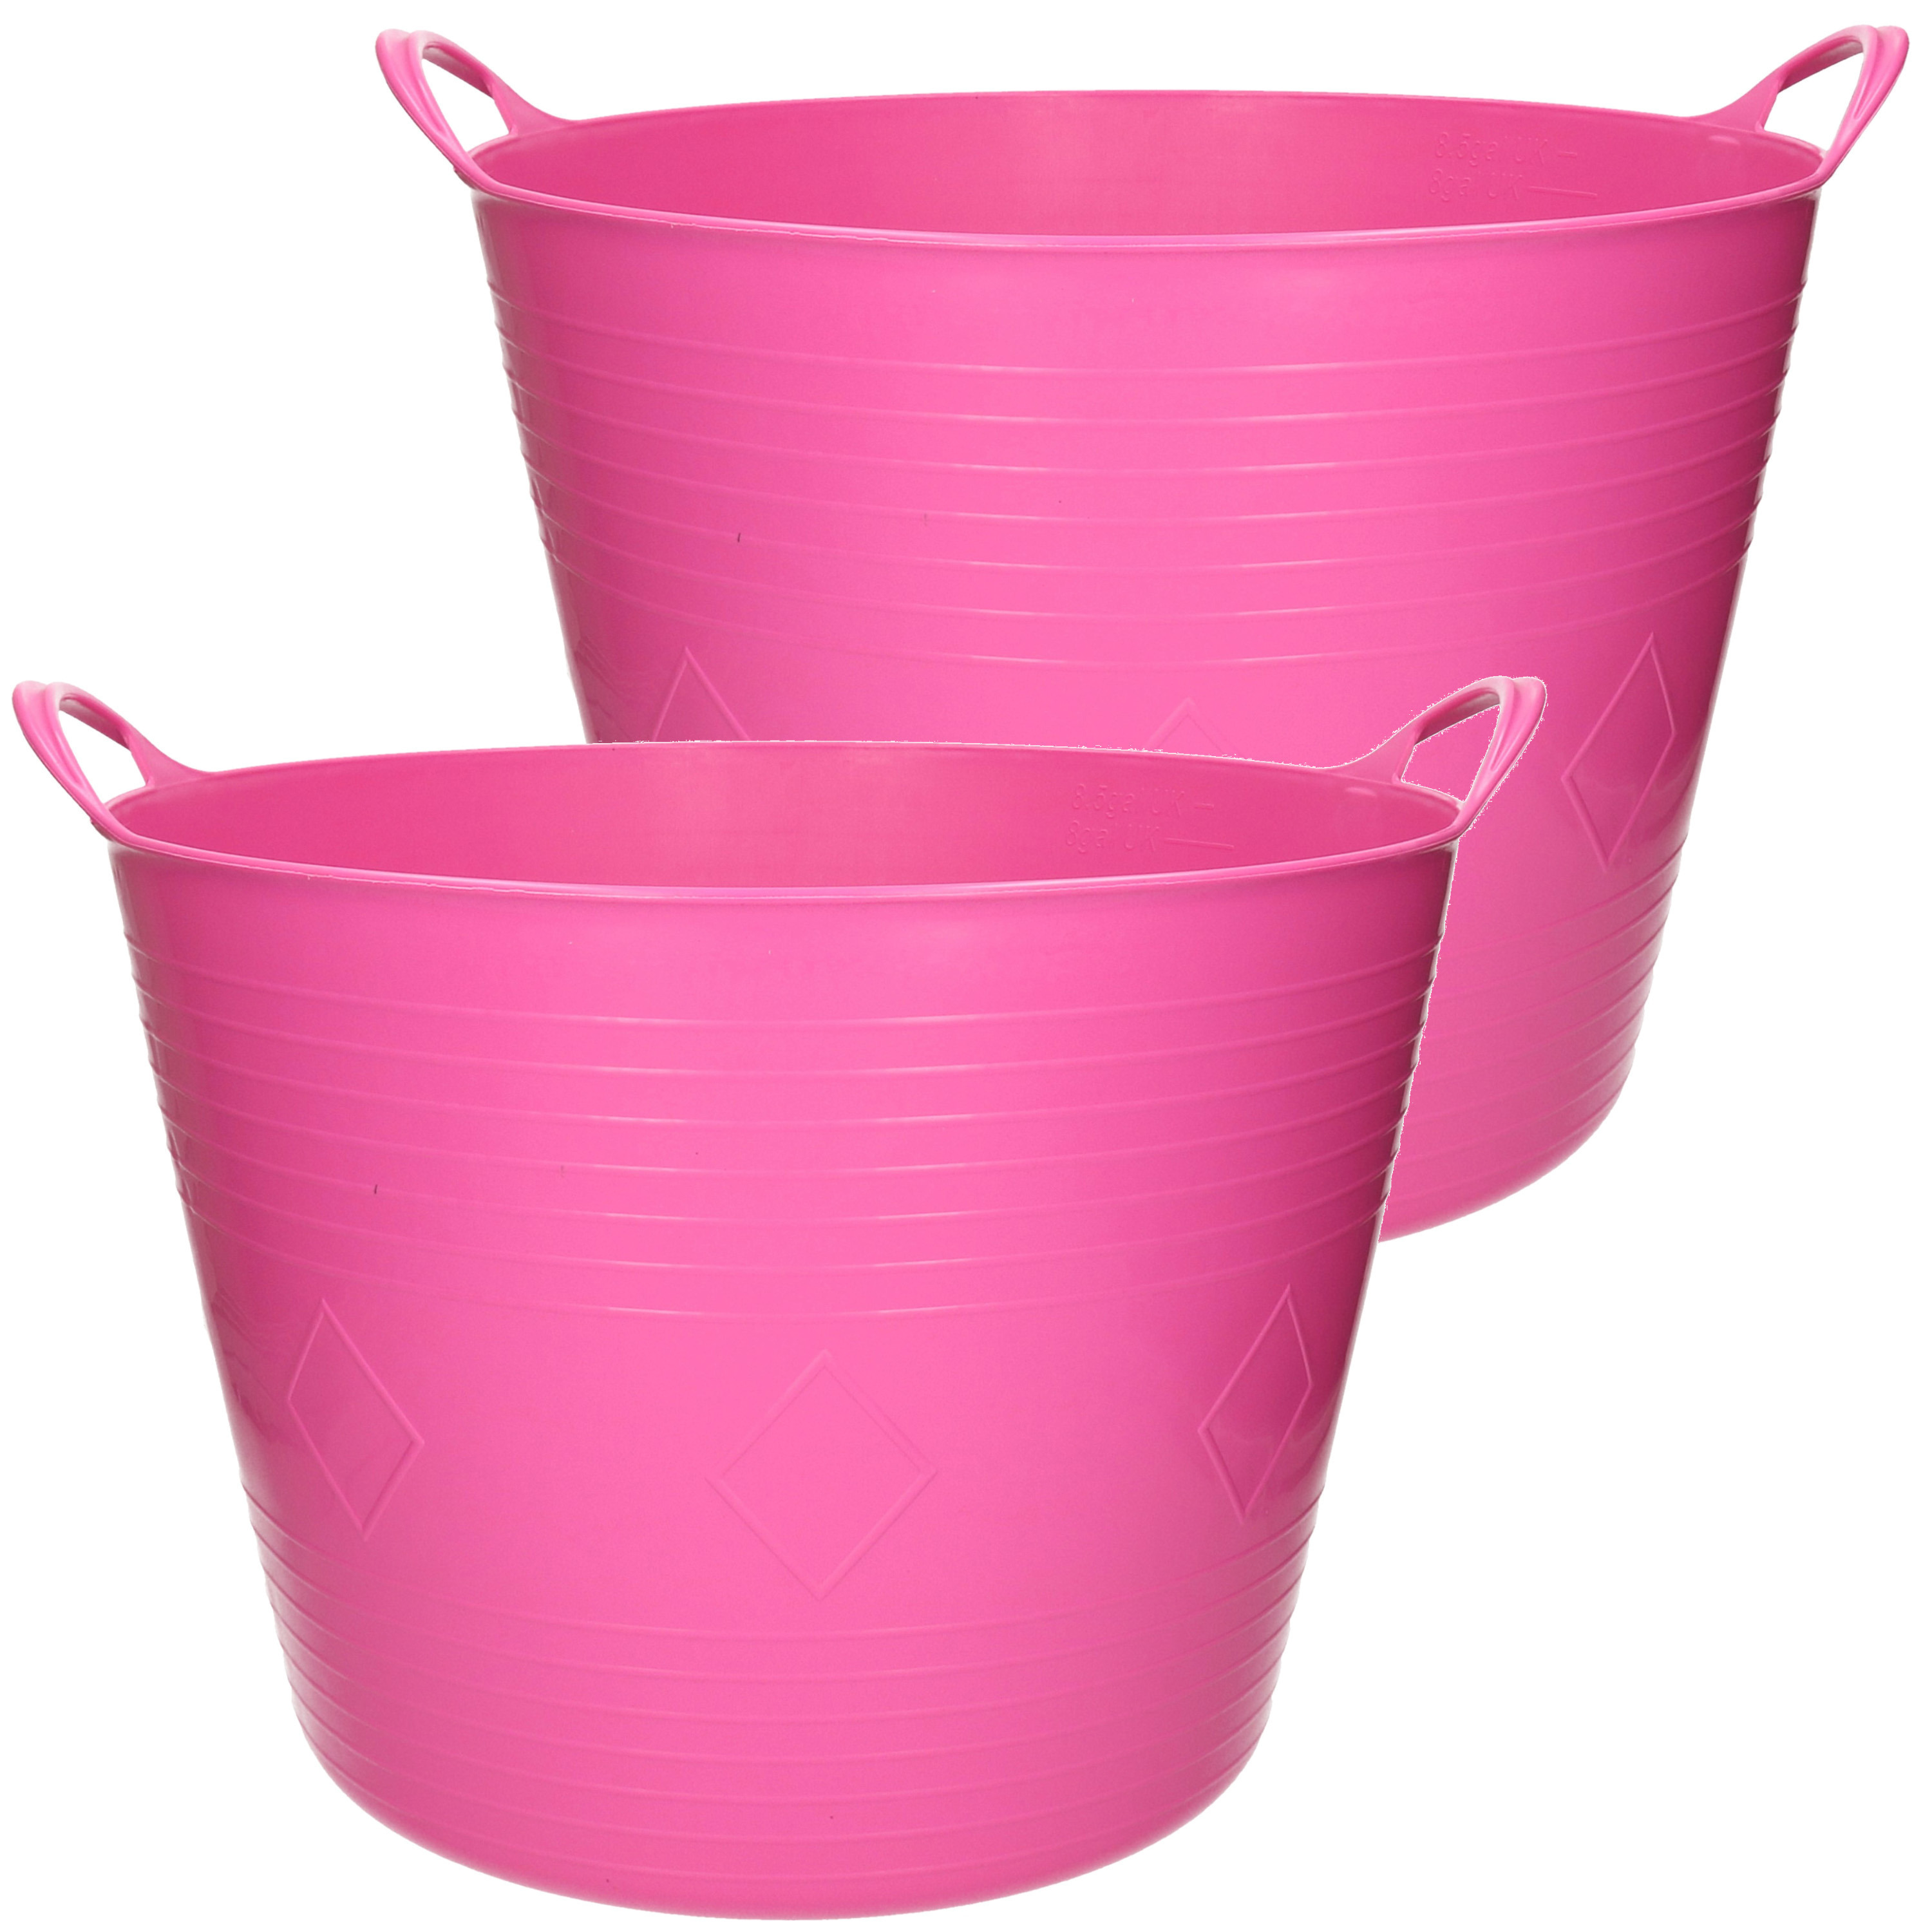 Merkloos 2x stuks flexibele kuip emmer/wasmand rond roze 43 liter -